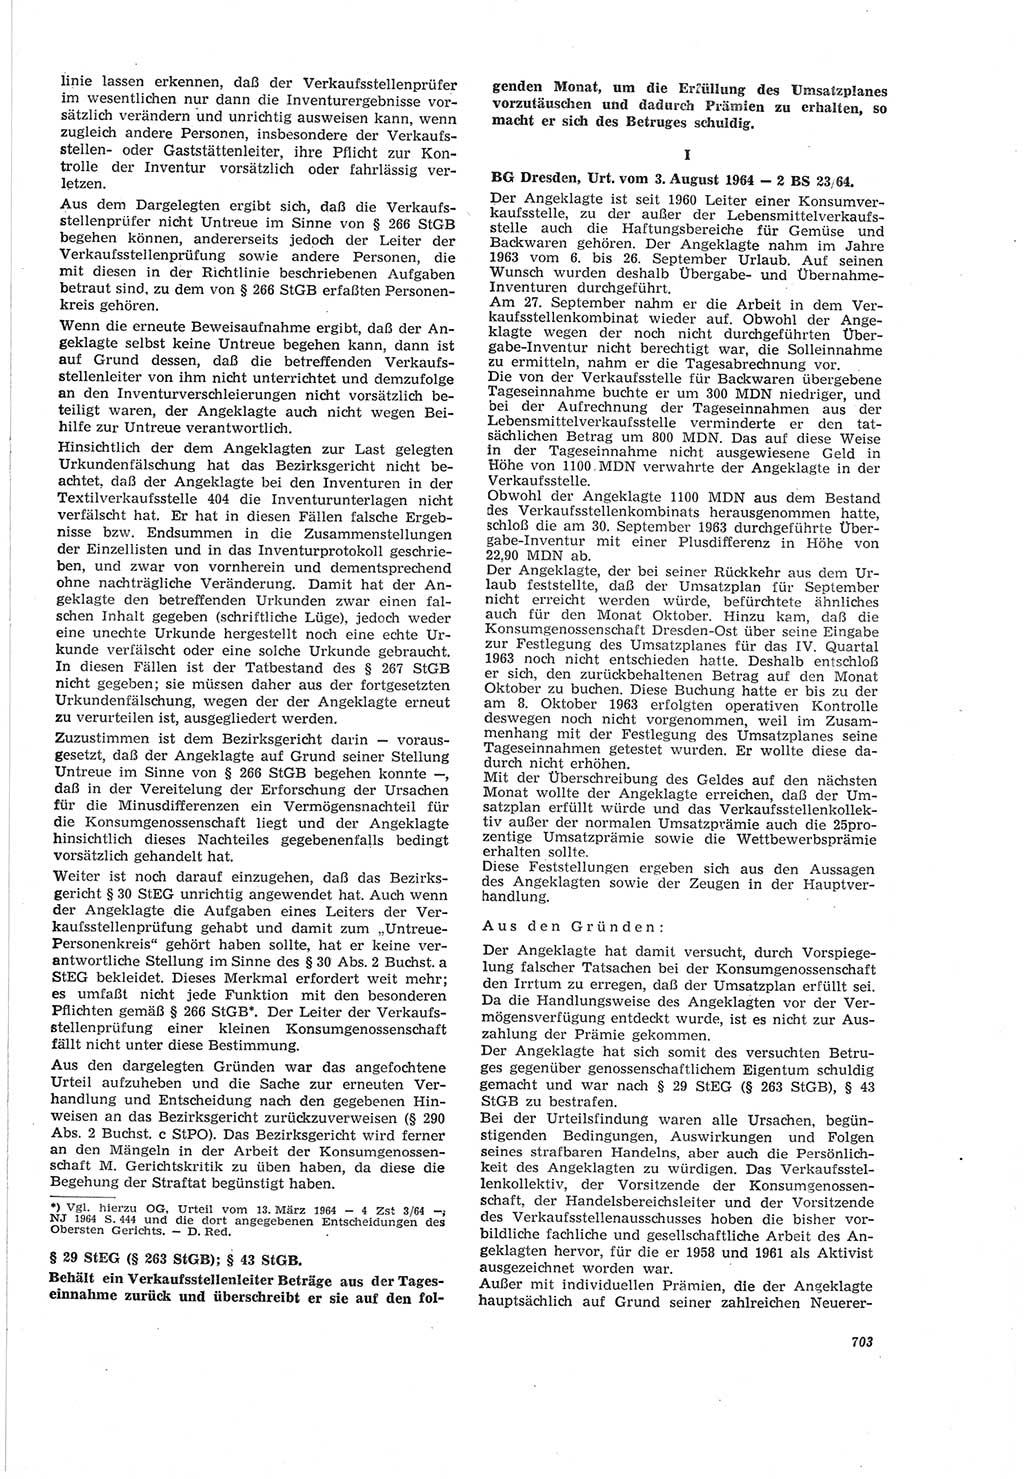 Neue Justiz (NJ), Zeitschrift für Recht und Rechtswissenschaft [Deutsche Demokratische Republik (DDR)], 18. Jahrgang 1964, Seite 703 (NJ DDR 1964, S. 703)